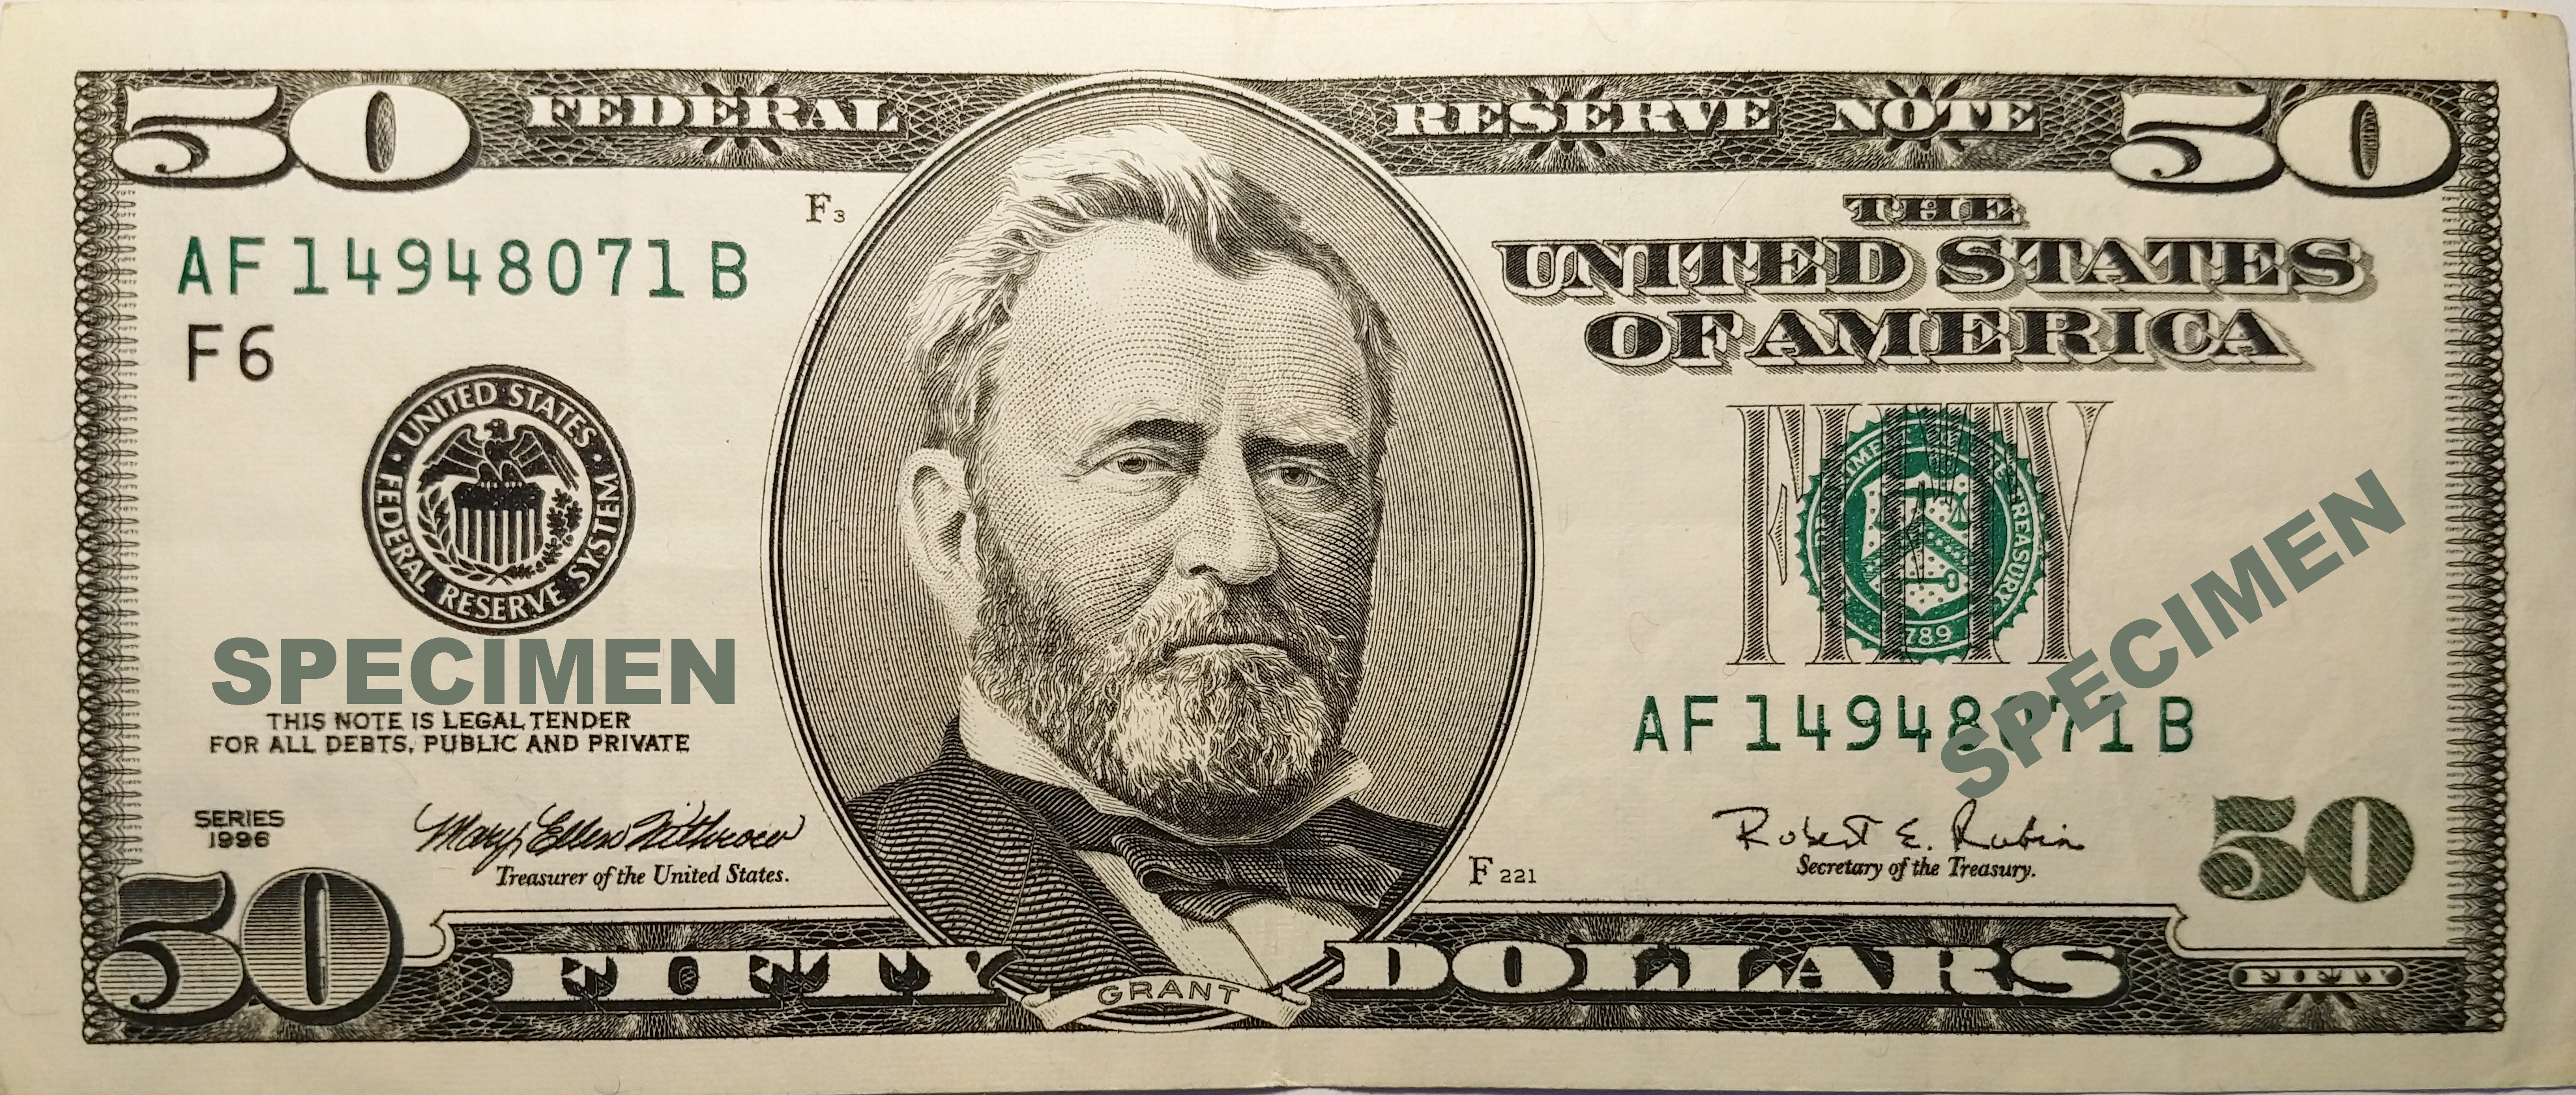 Is a 50 US dollar bill series 2009 still valid? - Quora